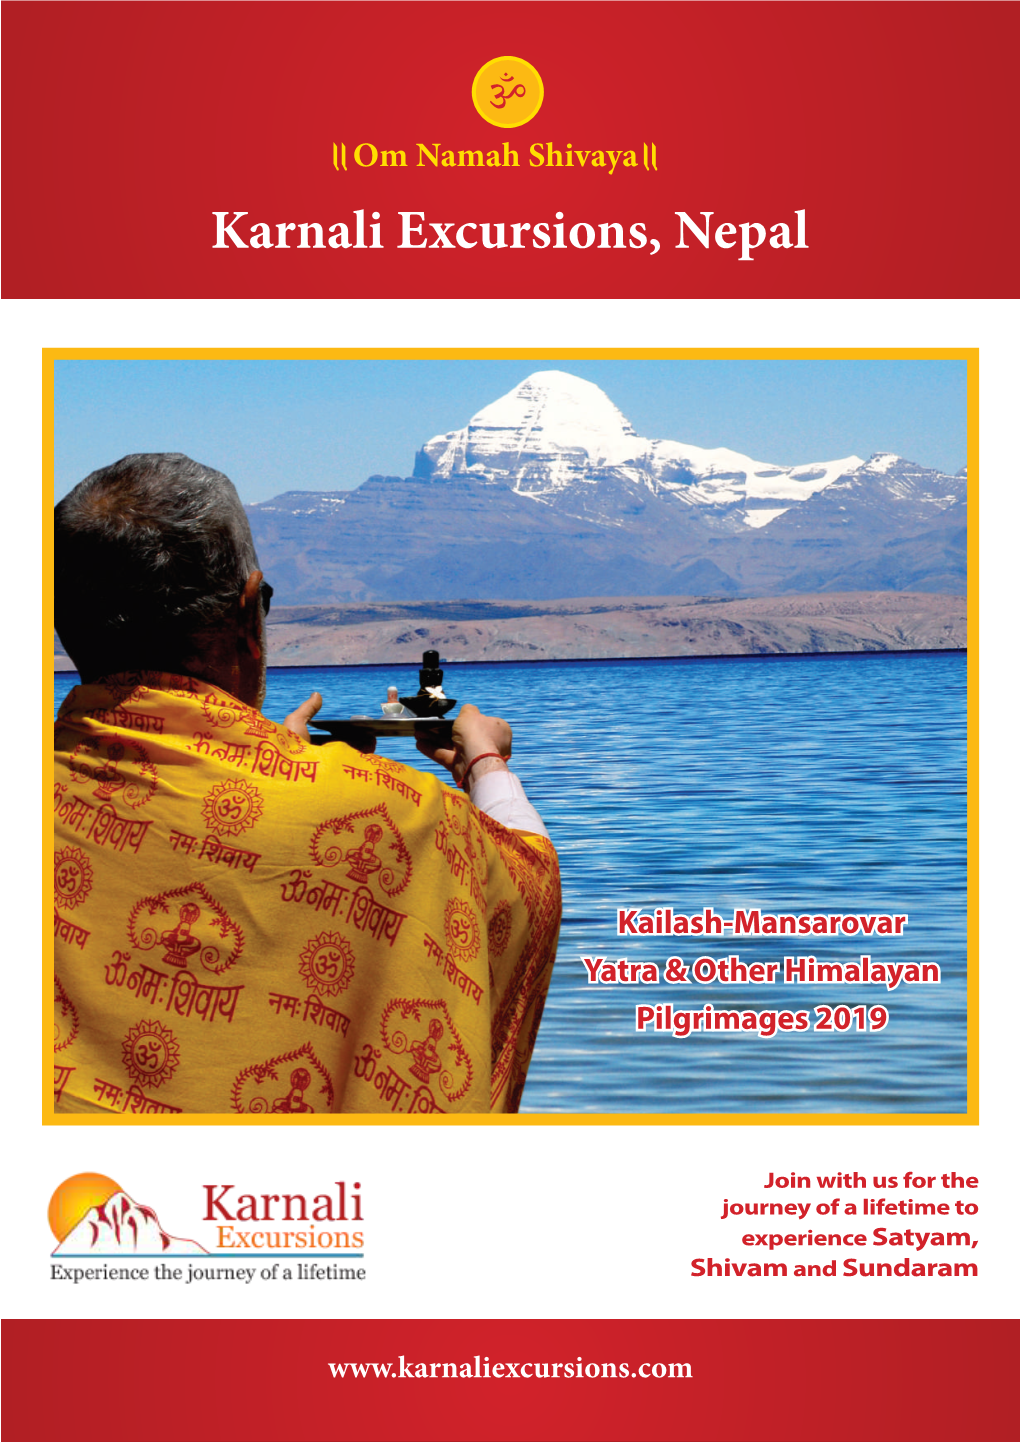 Karnali Excursions, Nepal